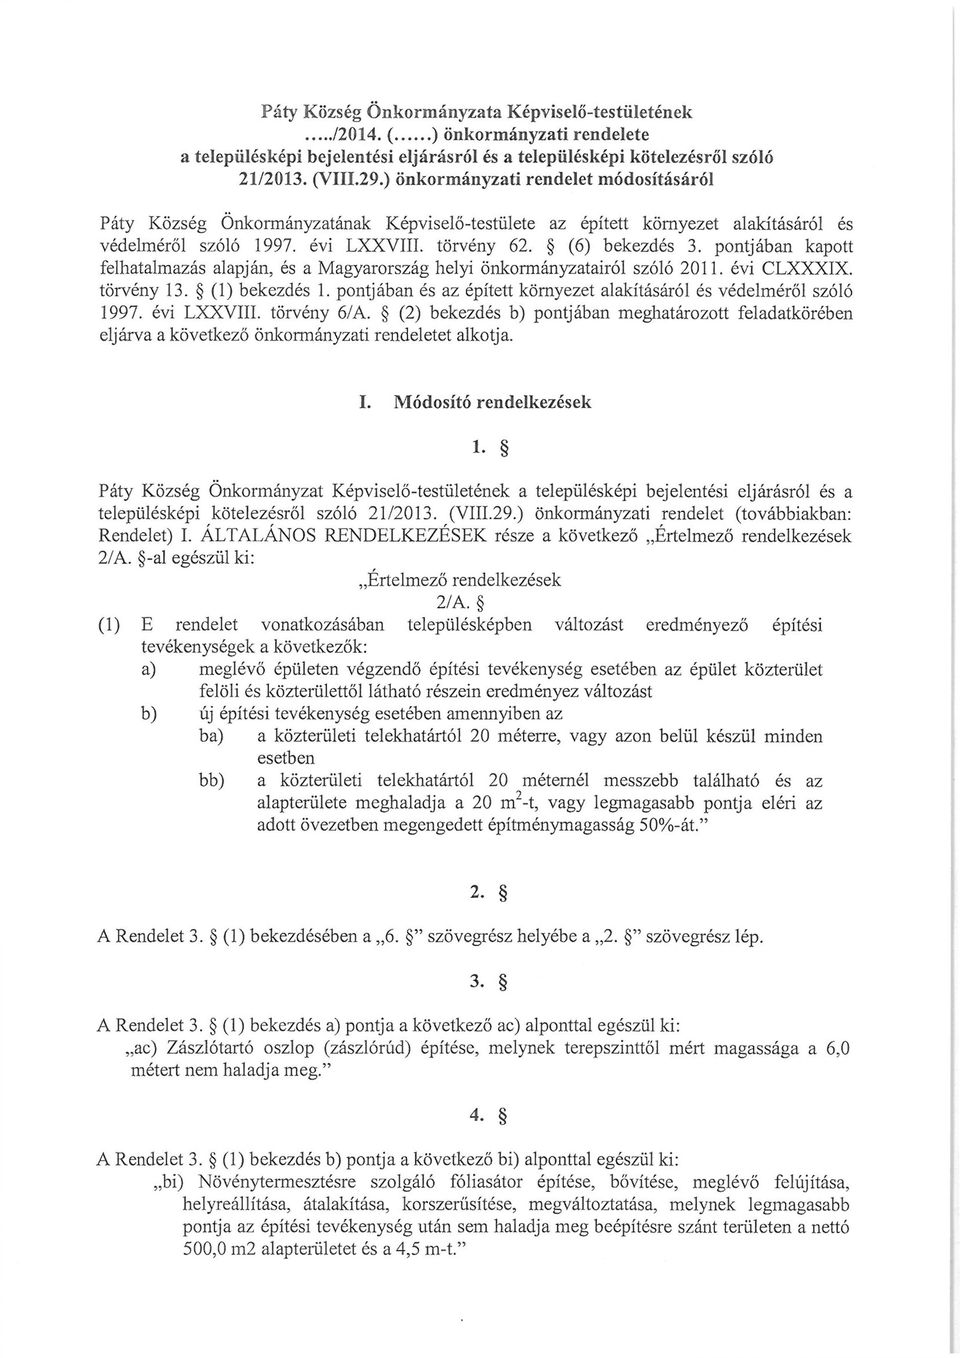 pontjában kapott felhatalmazás alapján, és a Magyarország helyi önkormányzatairól szóló 2011. évi CLXXXIX. törvény 13. (1) bekezdés 1.